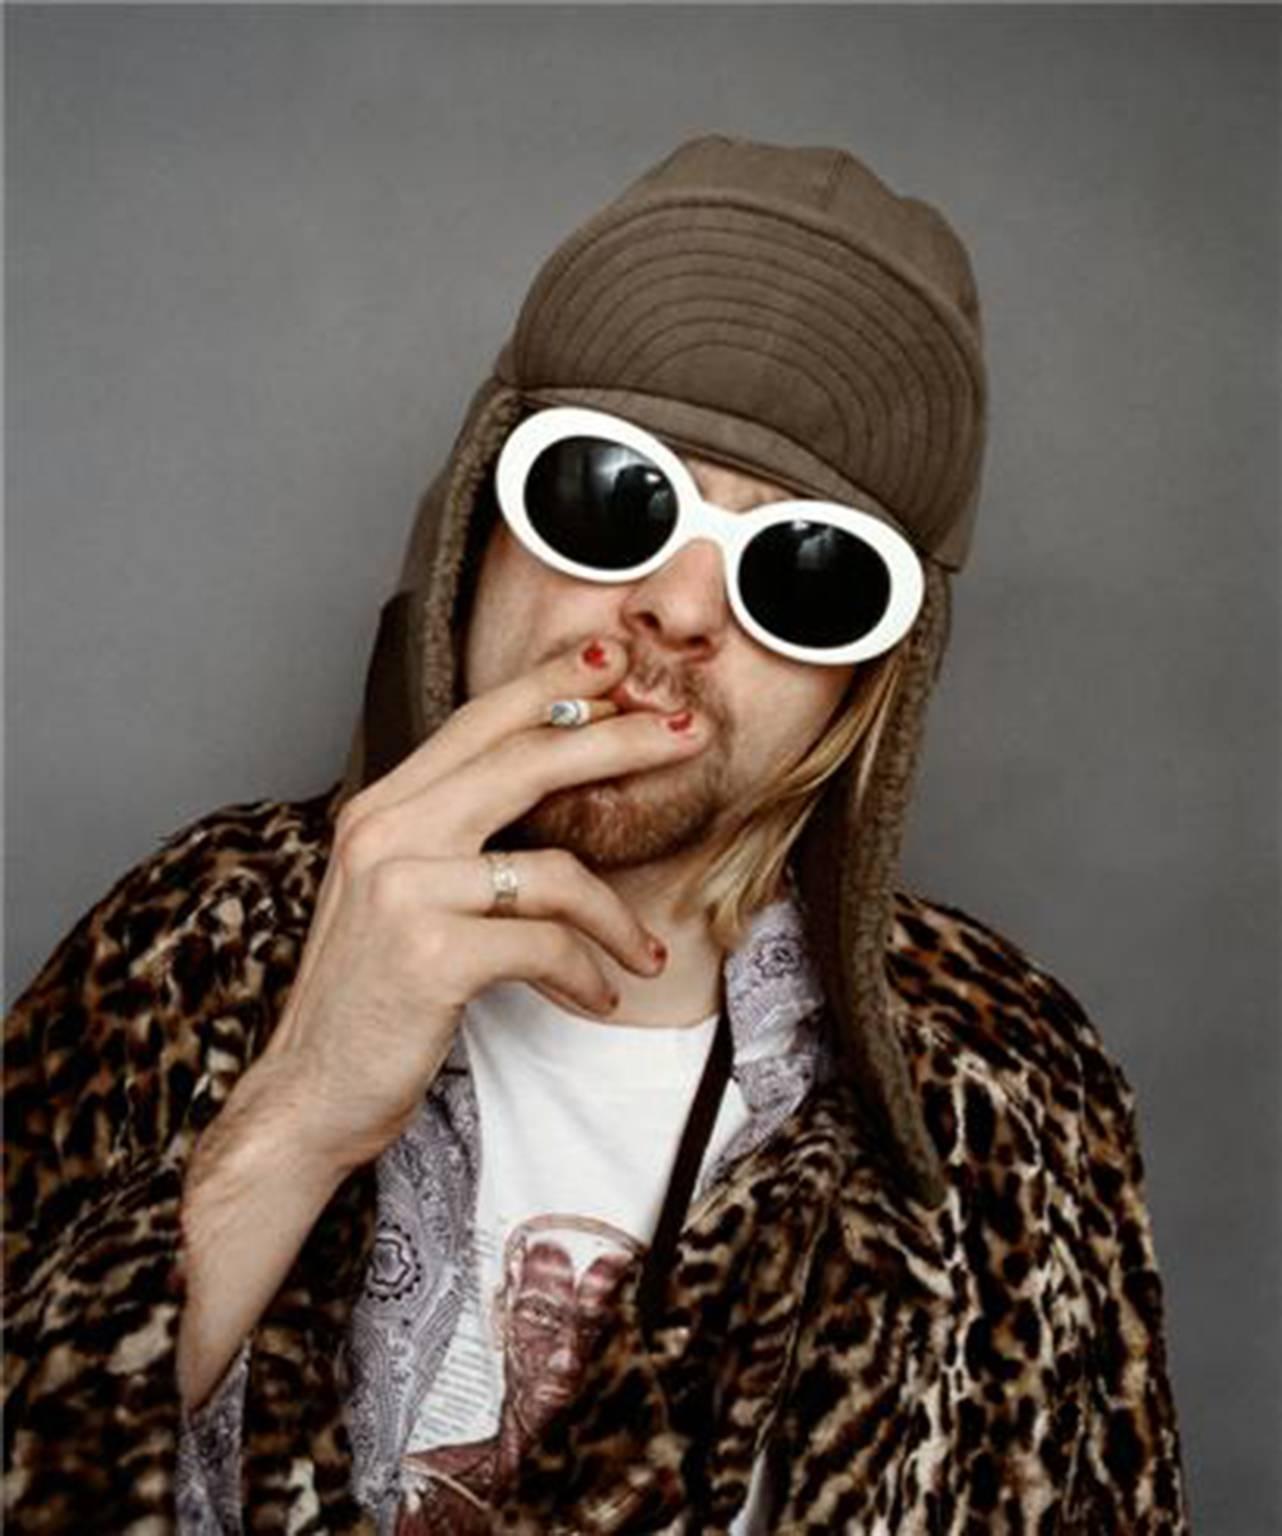 Jesse Frohman Color Photograph - Kurt Cobain; "Smoking A"